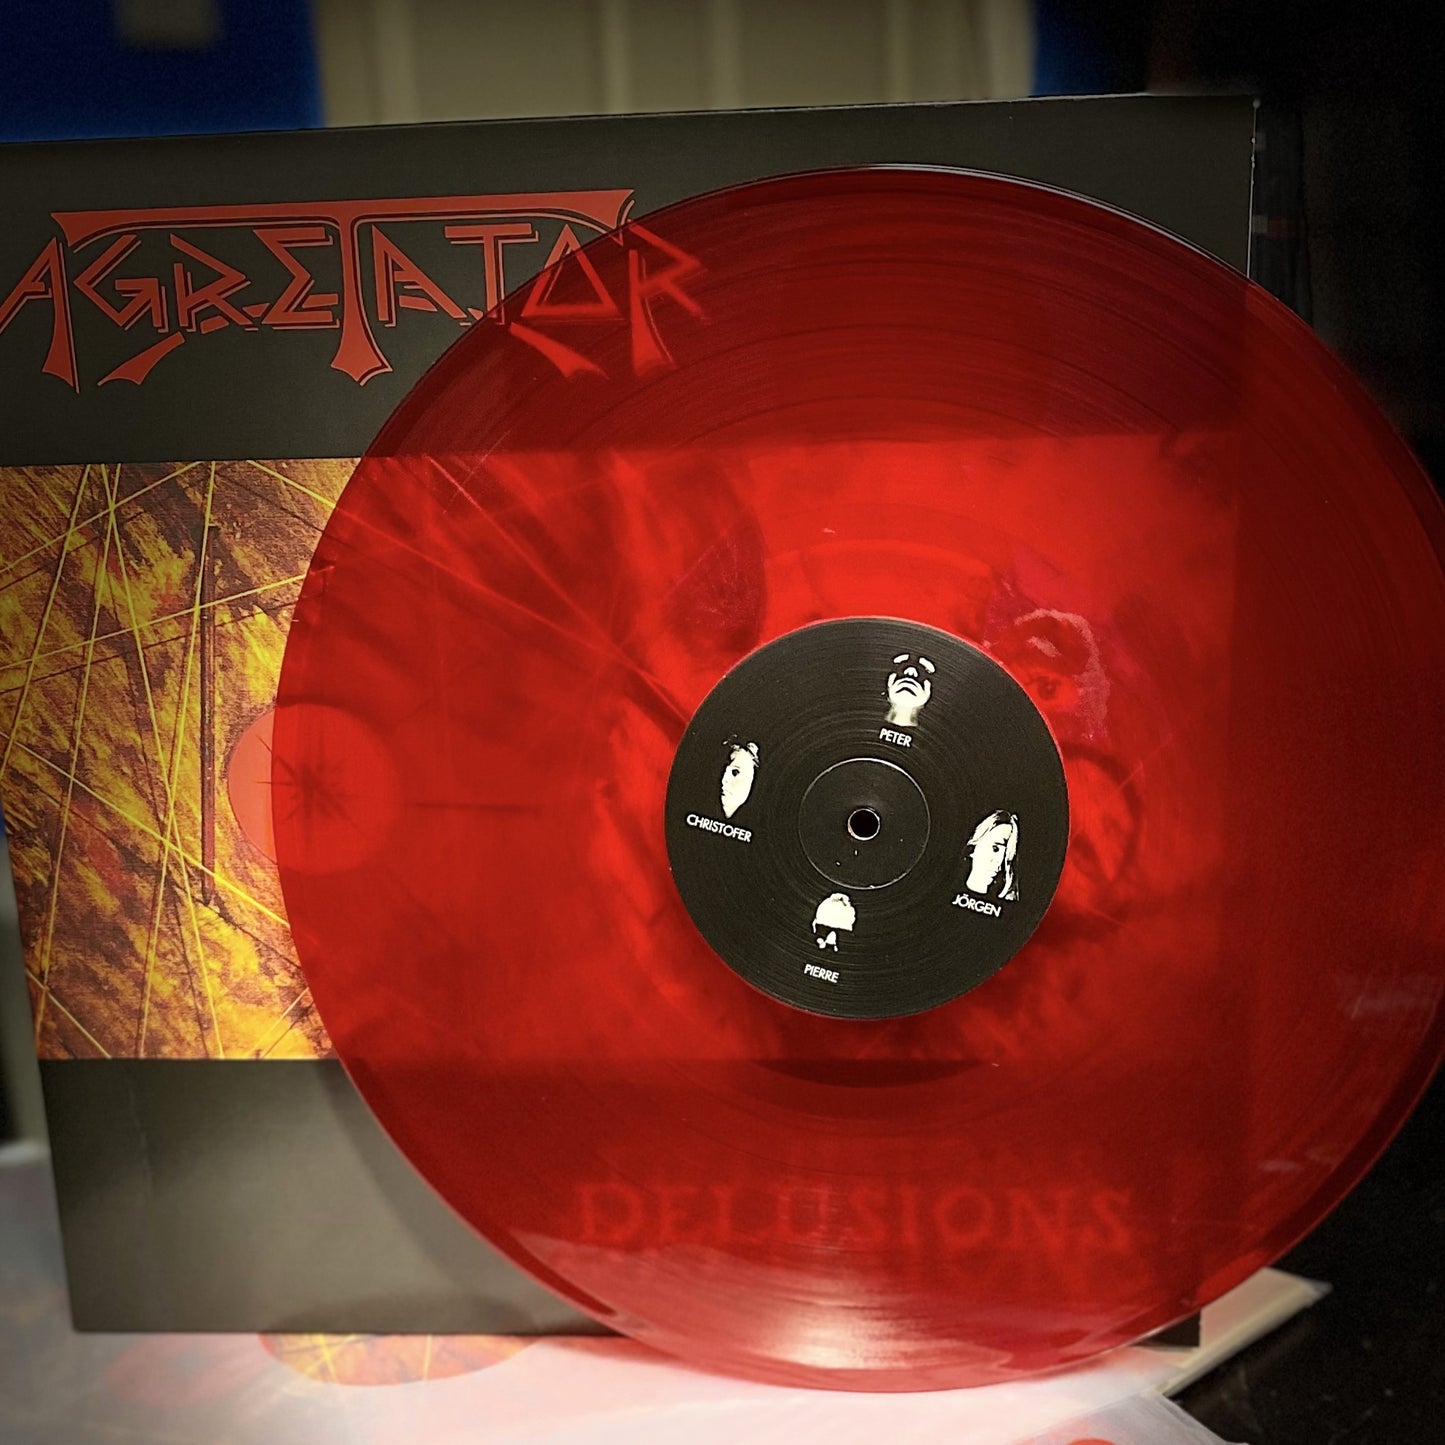 AGRETATOR – Delusions LP (red vinyl)